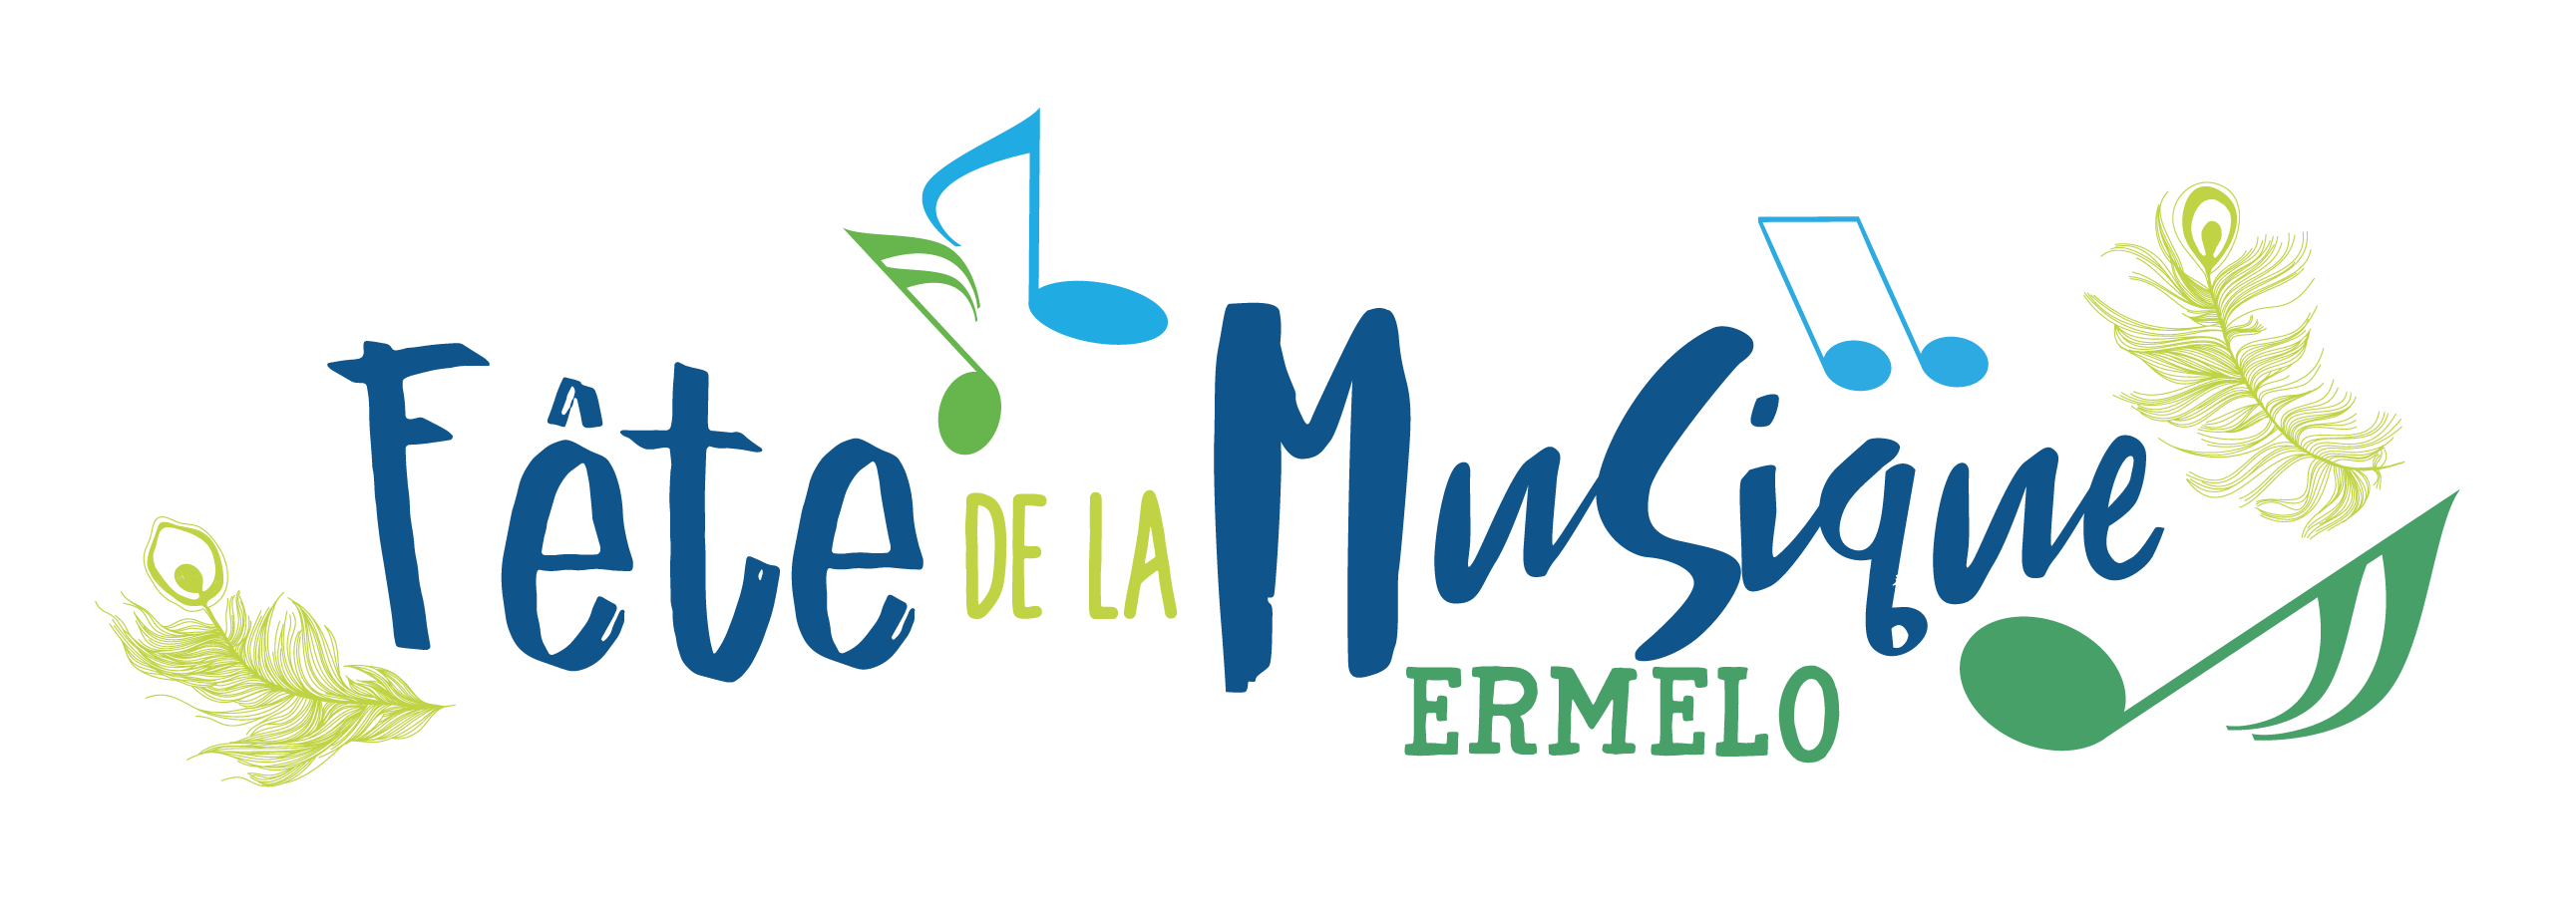 Fête de la Musique logo